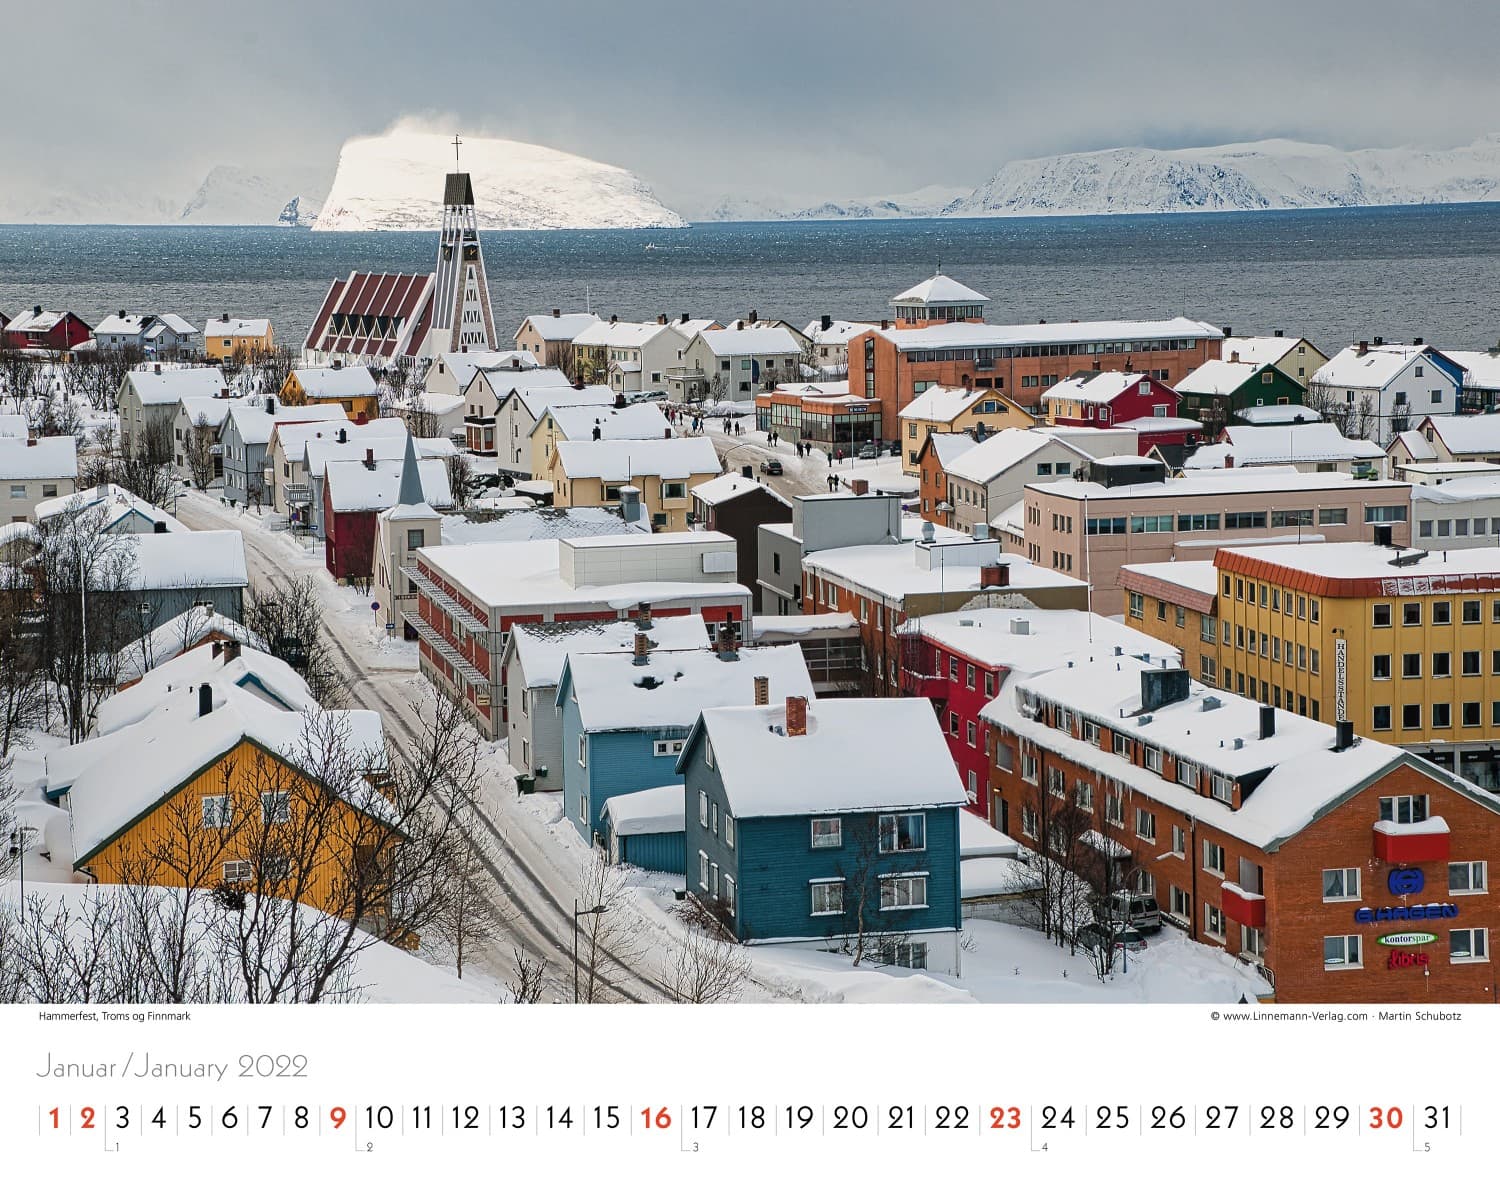 Wall Calendar Hurtigruten 2022